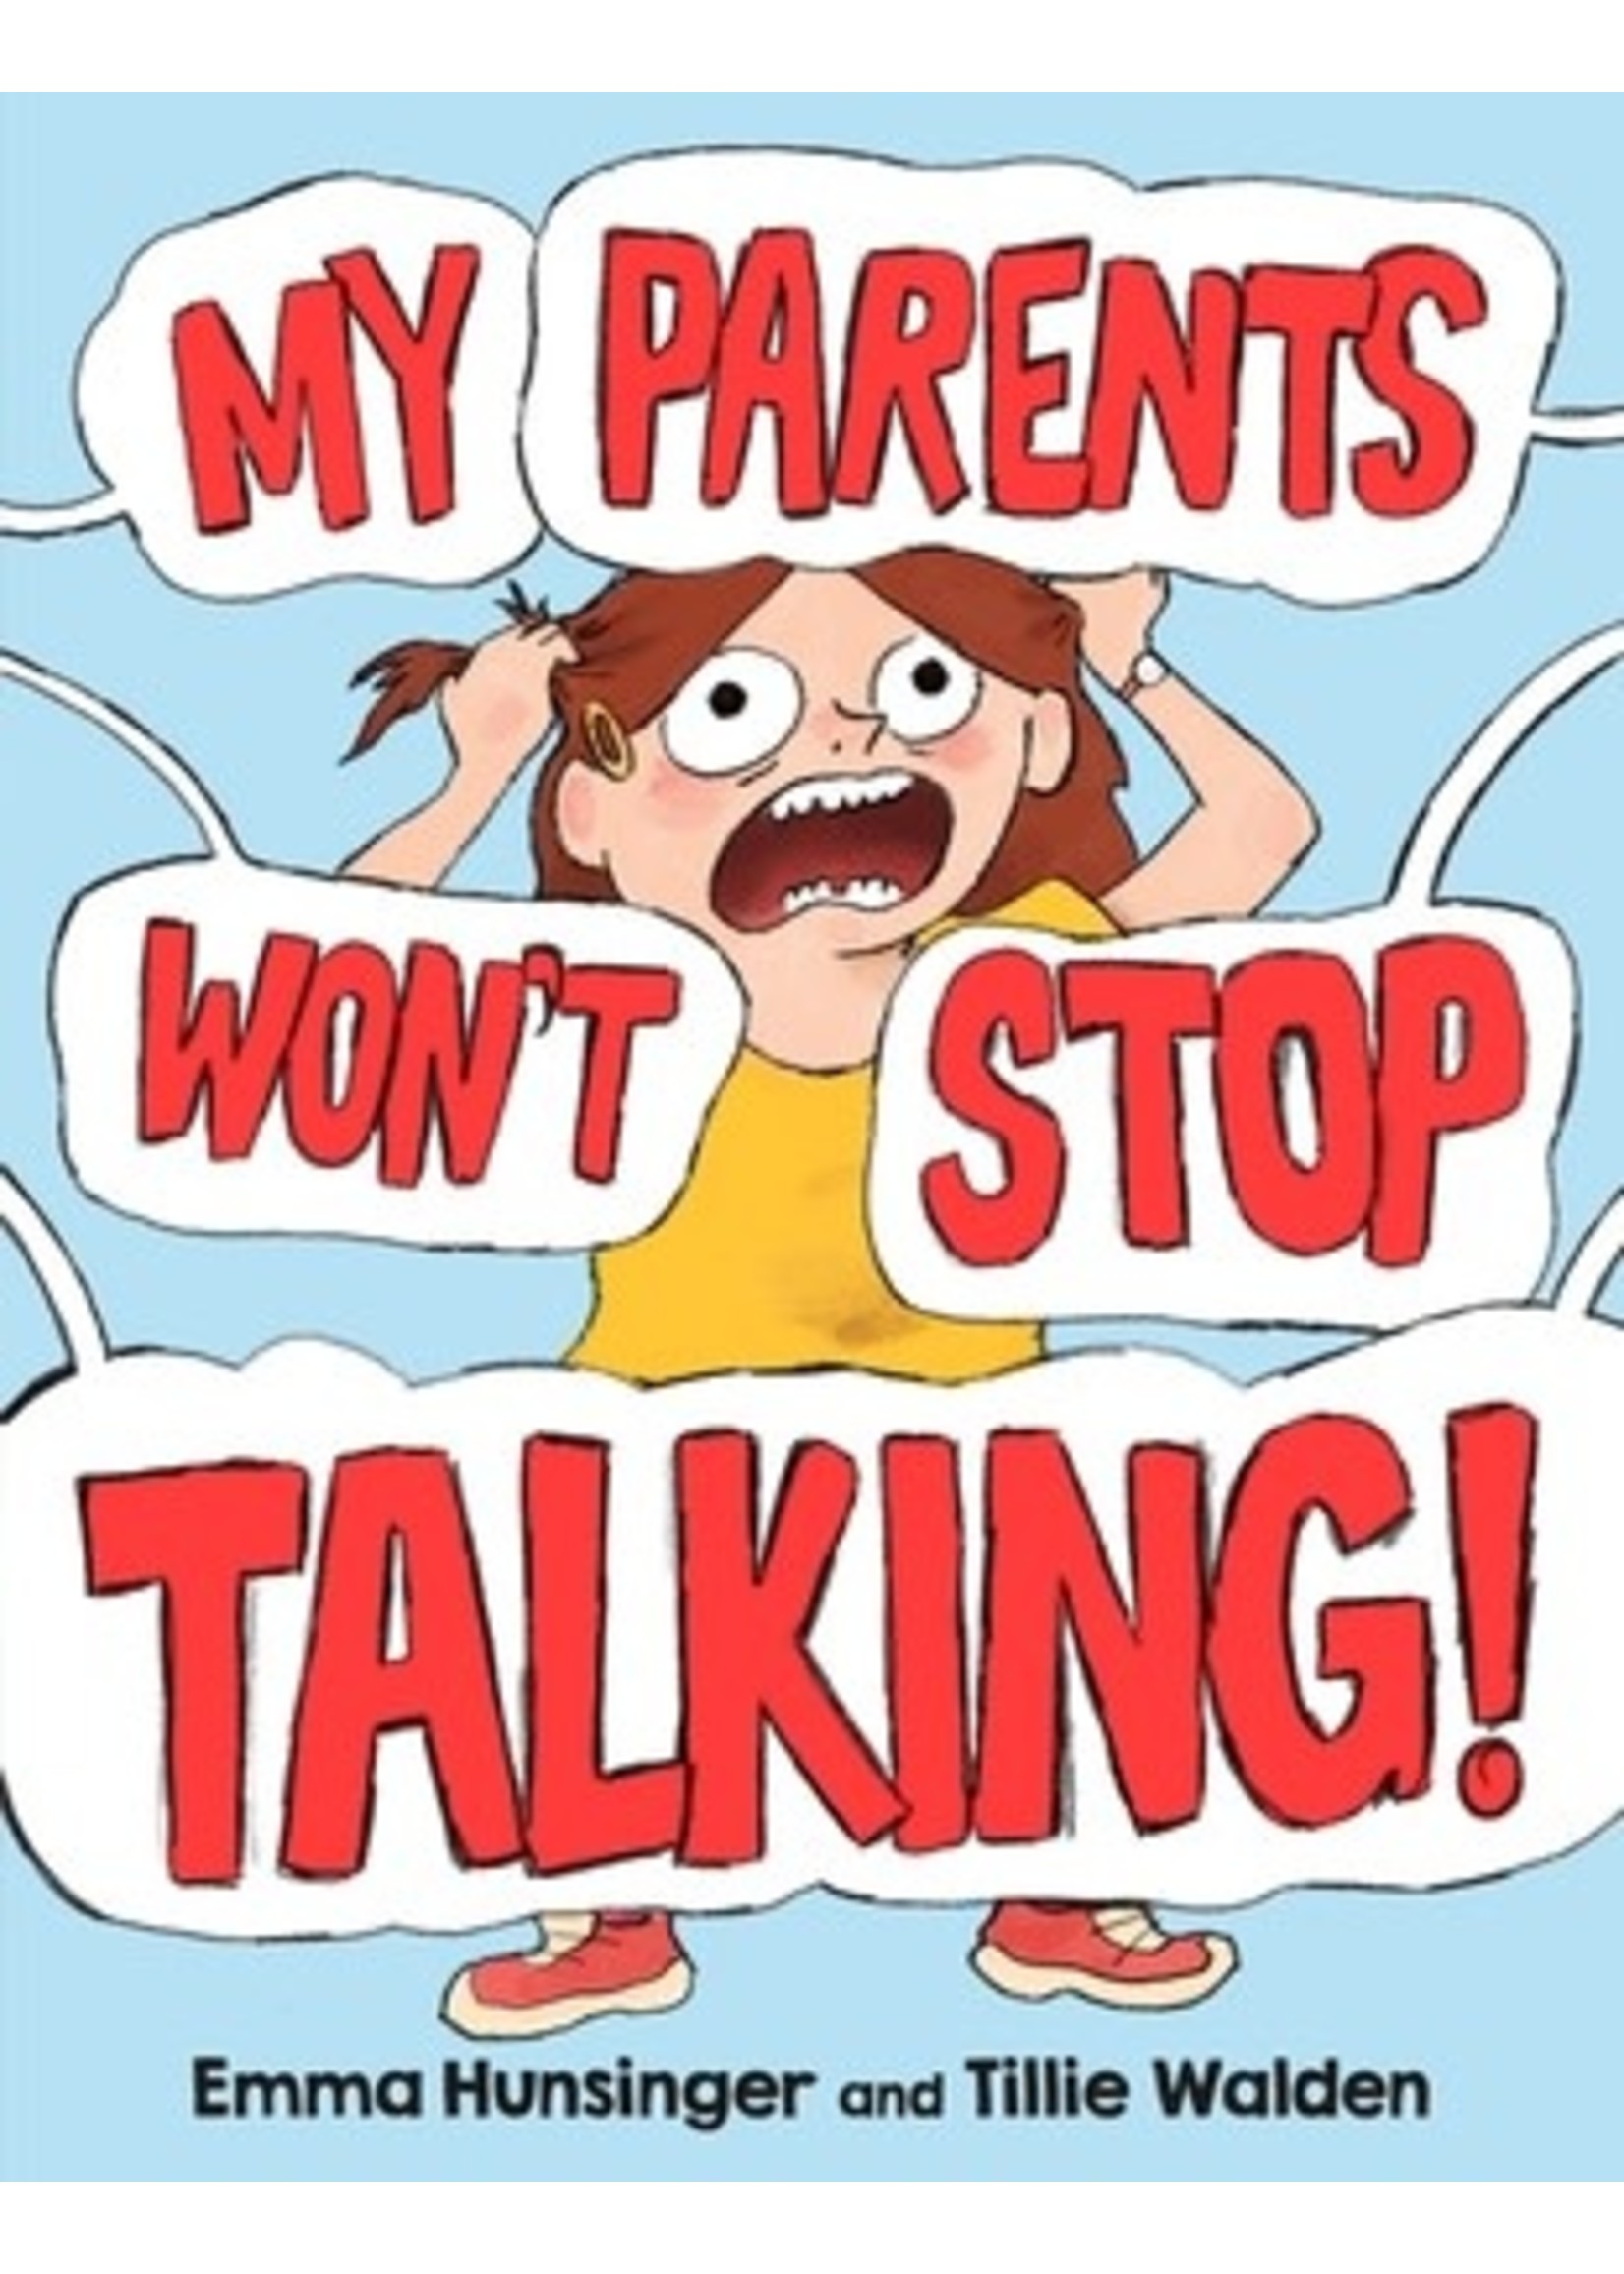 My Parents Won't Stop Talking! by Emma Hunsinger, Tillie Walden